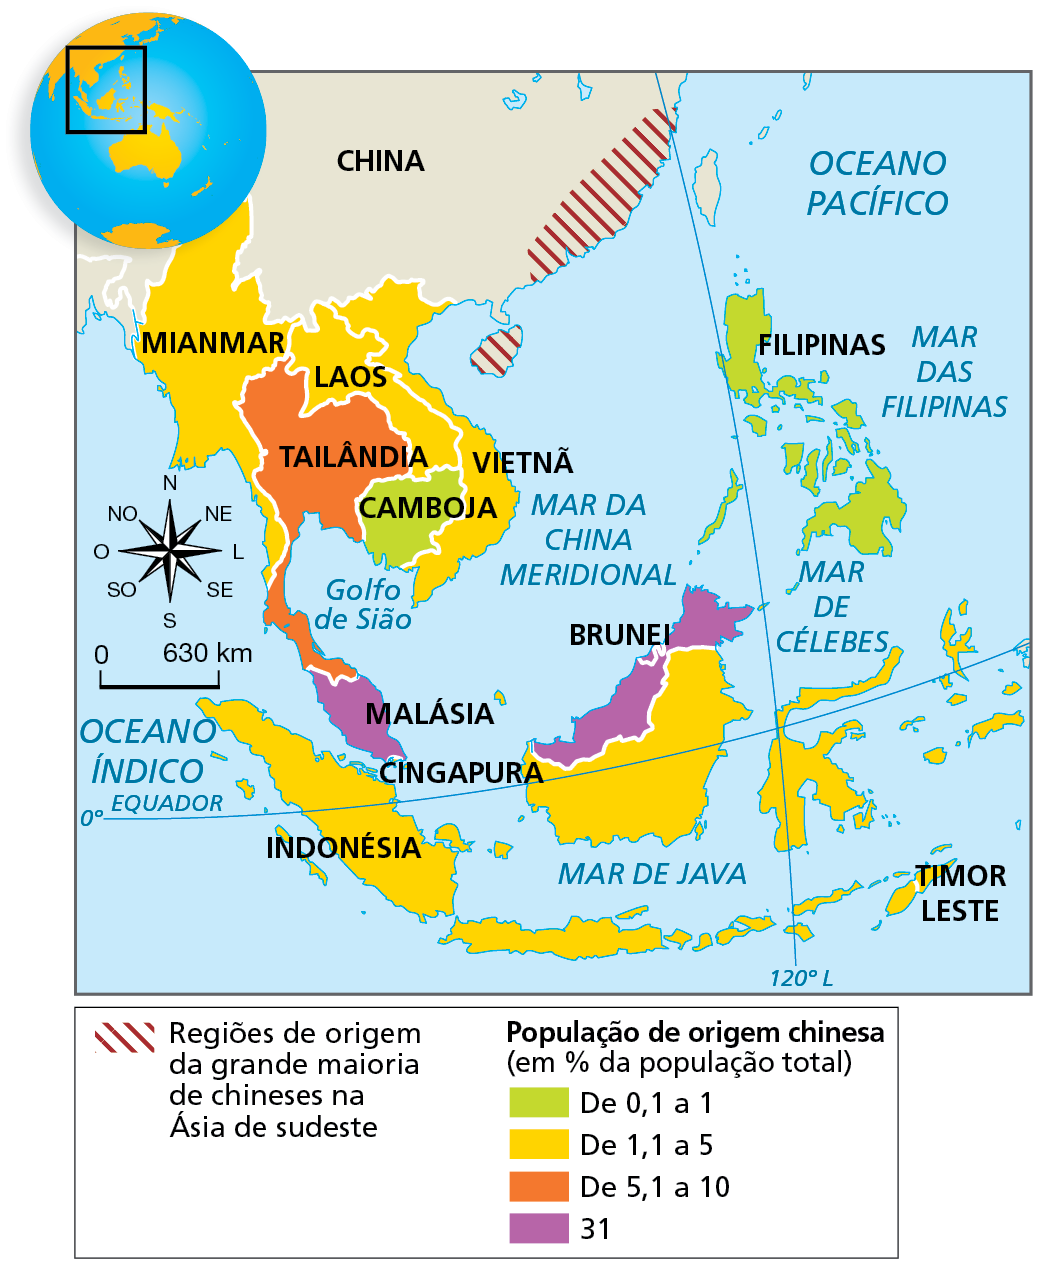 Mapa. A diáspora chinesa na Ásia de sudeste. Mapa representando as porcentagens de população de origem chinesa nos países do Sudeste Asiático.
Regiões de origem da grande maioria de chineses na Ásia de sudeste: ilha de Hainan e litoral sudeste da China.
População de origem chinesa (em porcentagem da população total)
De 0,1 a 1%: Filipinas e Camboja.
De 1,1 a 5%: Laos, Cingapura, Mianmar, Indonésia e Vietnã.
De 5,1 a 10%: Tailândia.
31%: Malásia e Brunei.
À esquerda, rosa dos ventos e escala de 0 a 630 quilômetros.